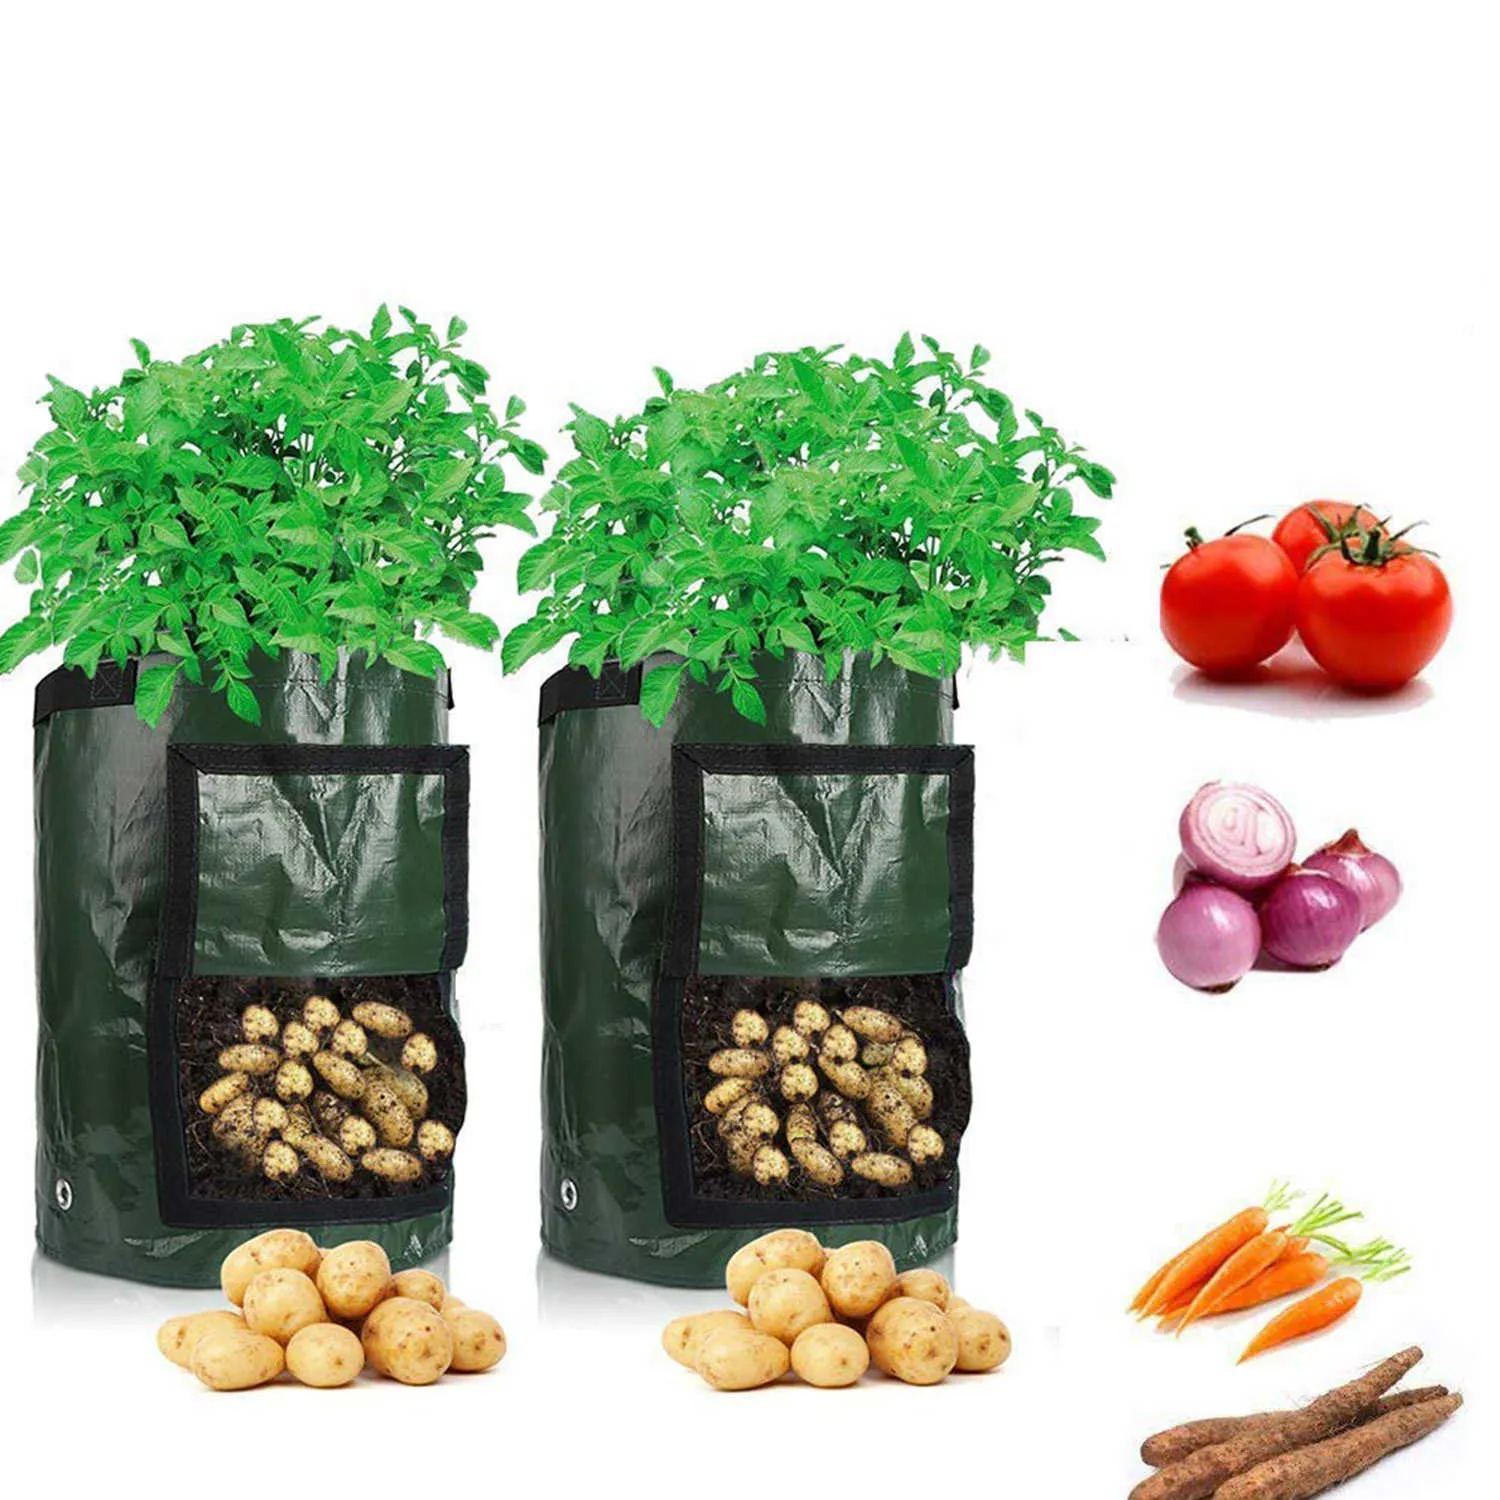 Coltivazione di patate Piantare Borse in tessuto Tessuto Vasi da giardino Fioriere Borse piantare ortaggi Grow Bag Farm Home Garden Tool D30 210615